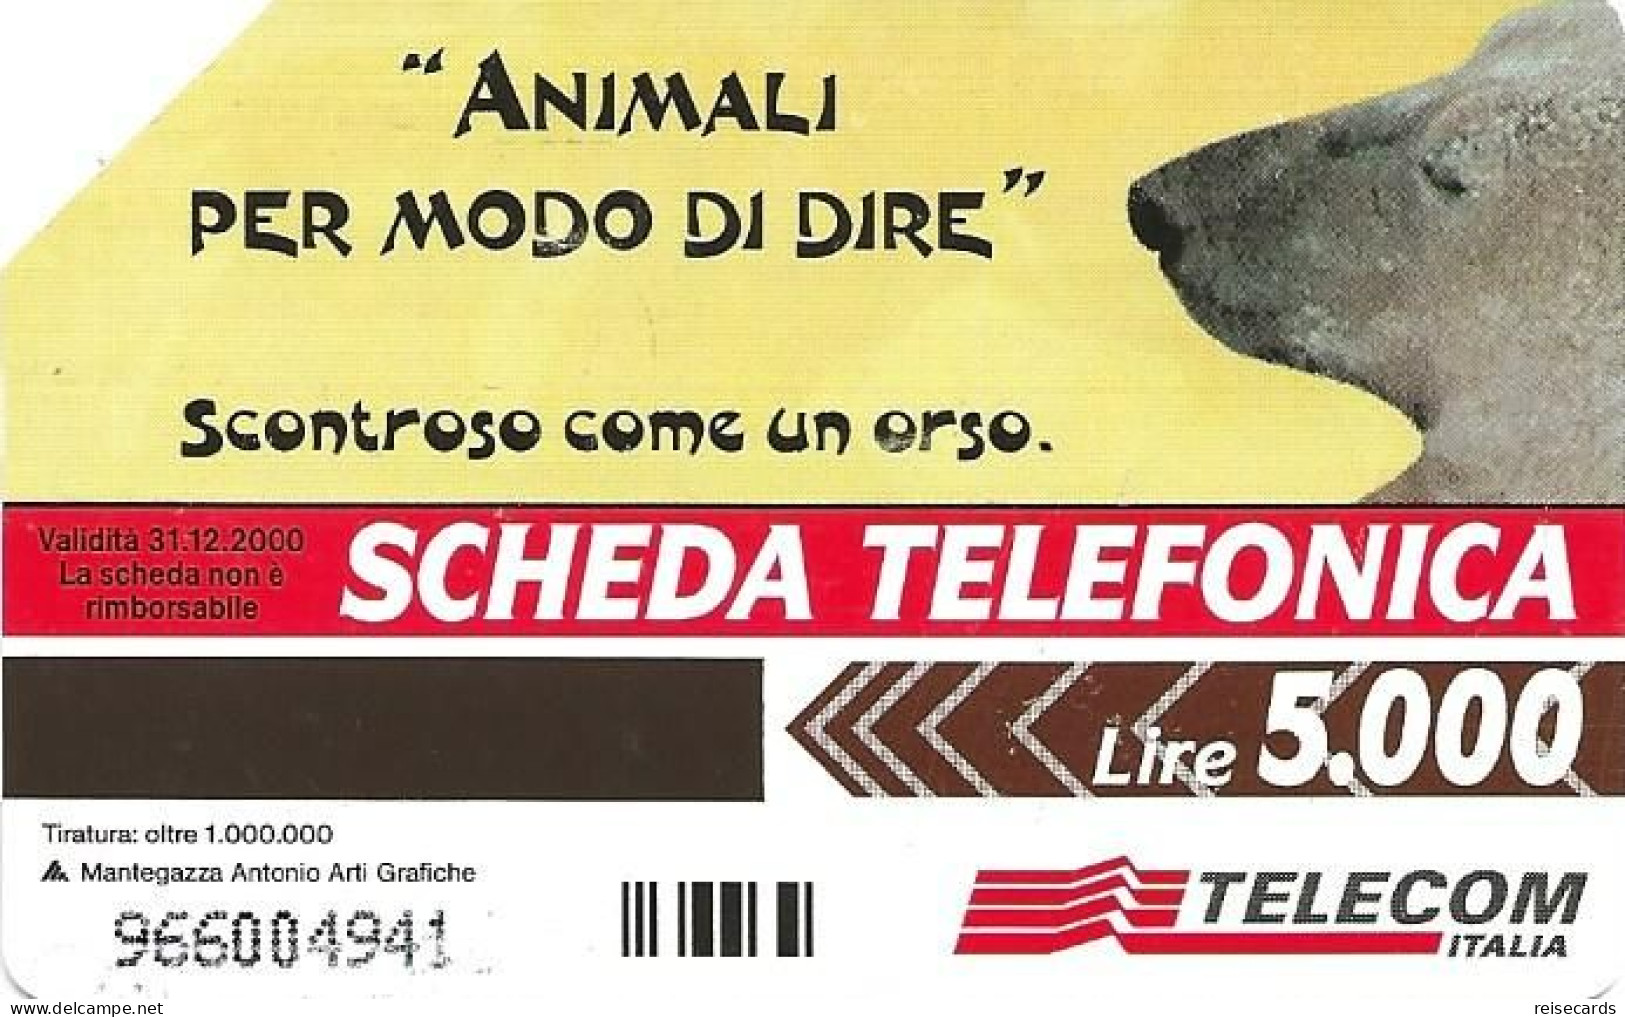 Italy: Telecom Italia - Animali Per Modo Di Dire, Orso - Públicas  Publicitarias